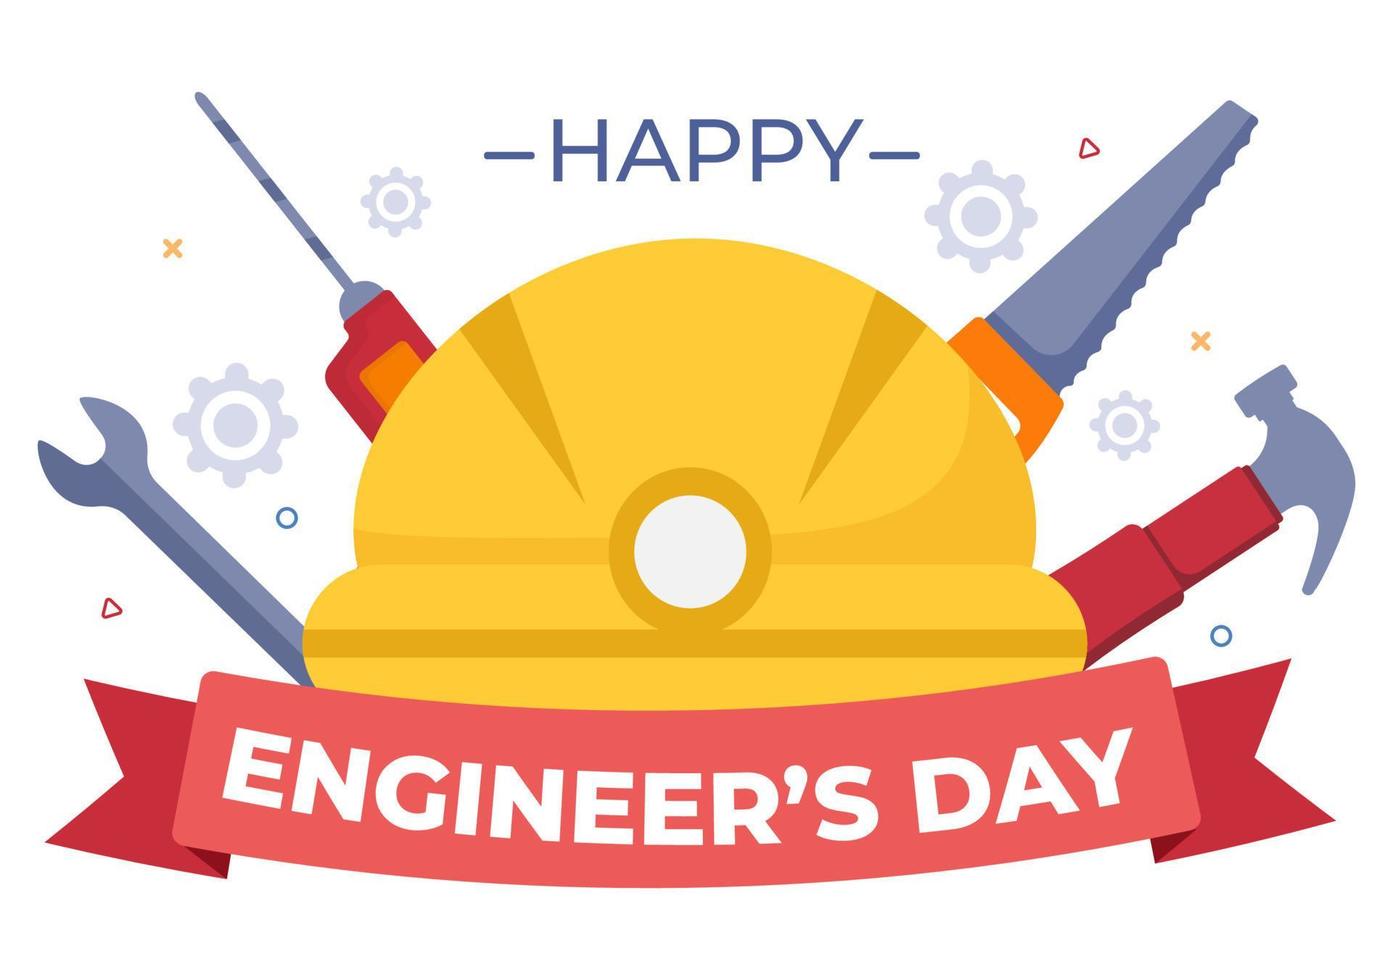 feliz día del ingeniero ilustración conmemorativa para ingeniero vector